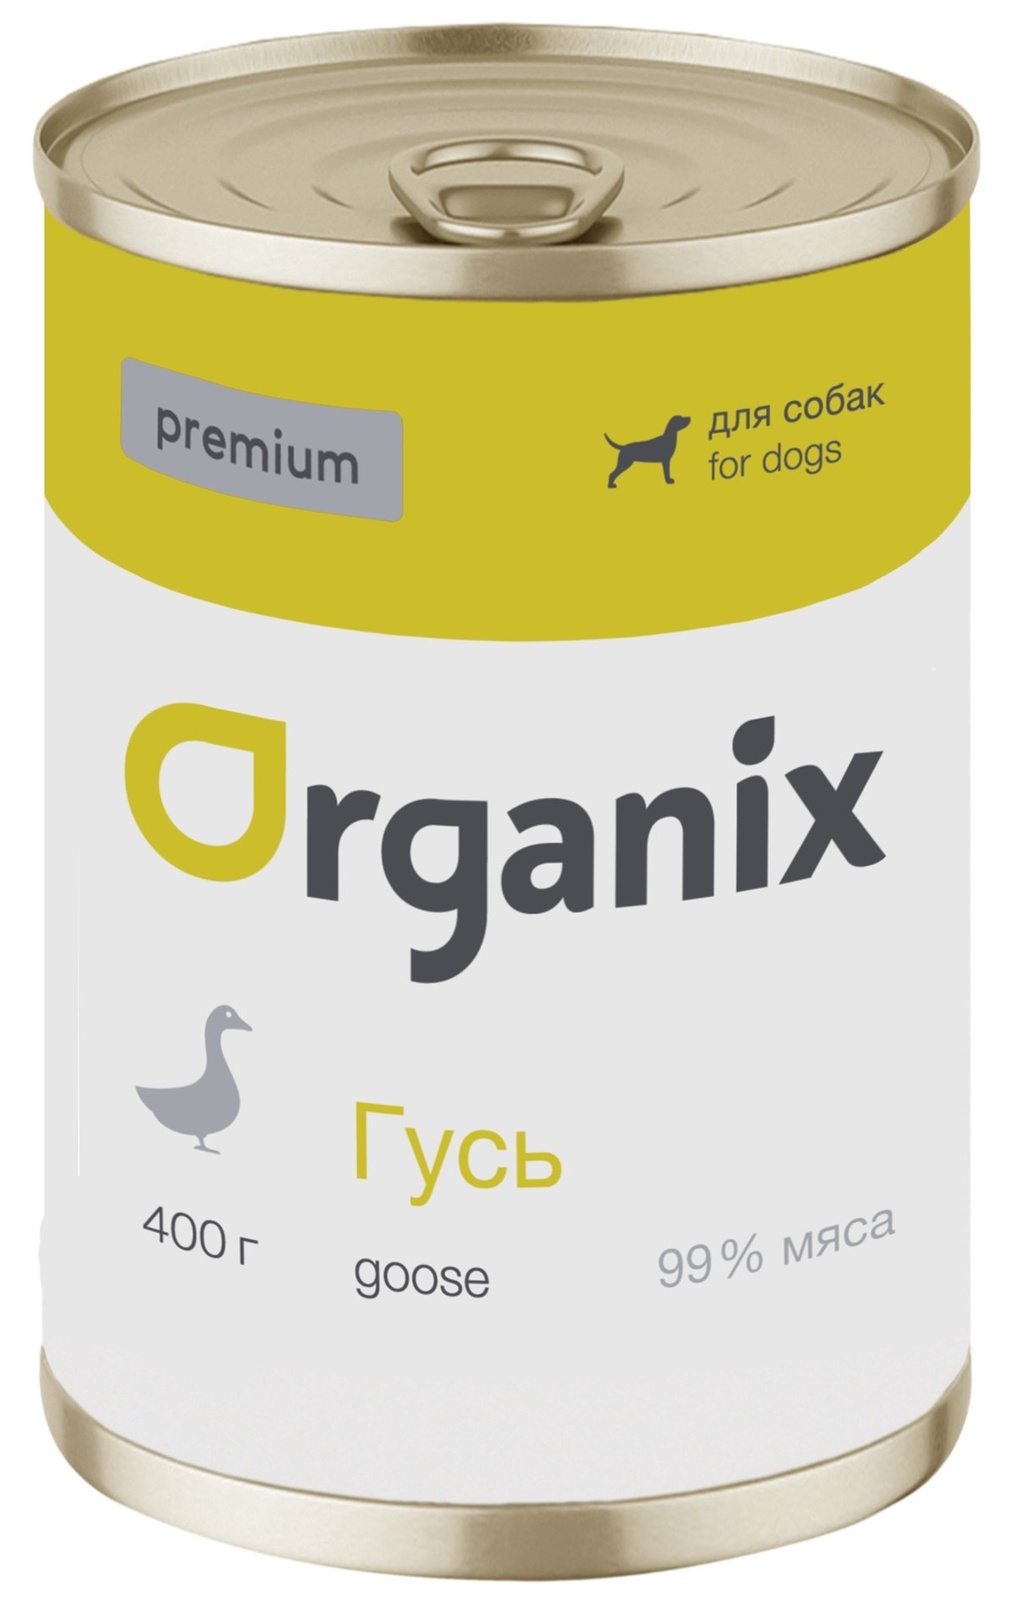 Organix консервы Organix монобелковые премиум консервы для собак, с гусем (400 г)